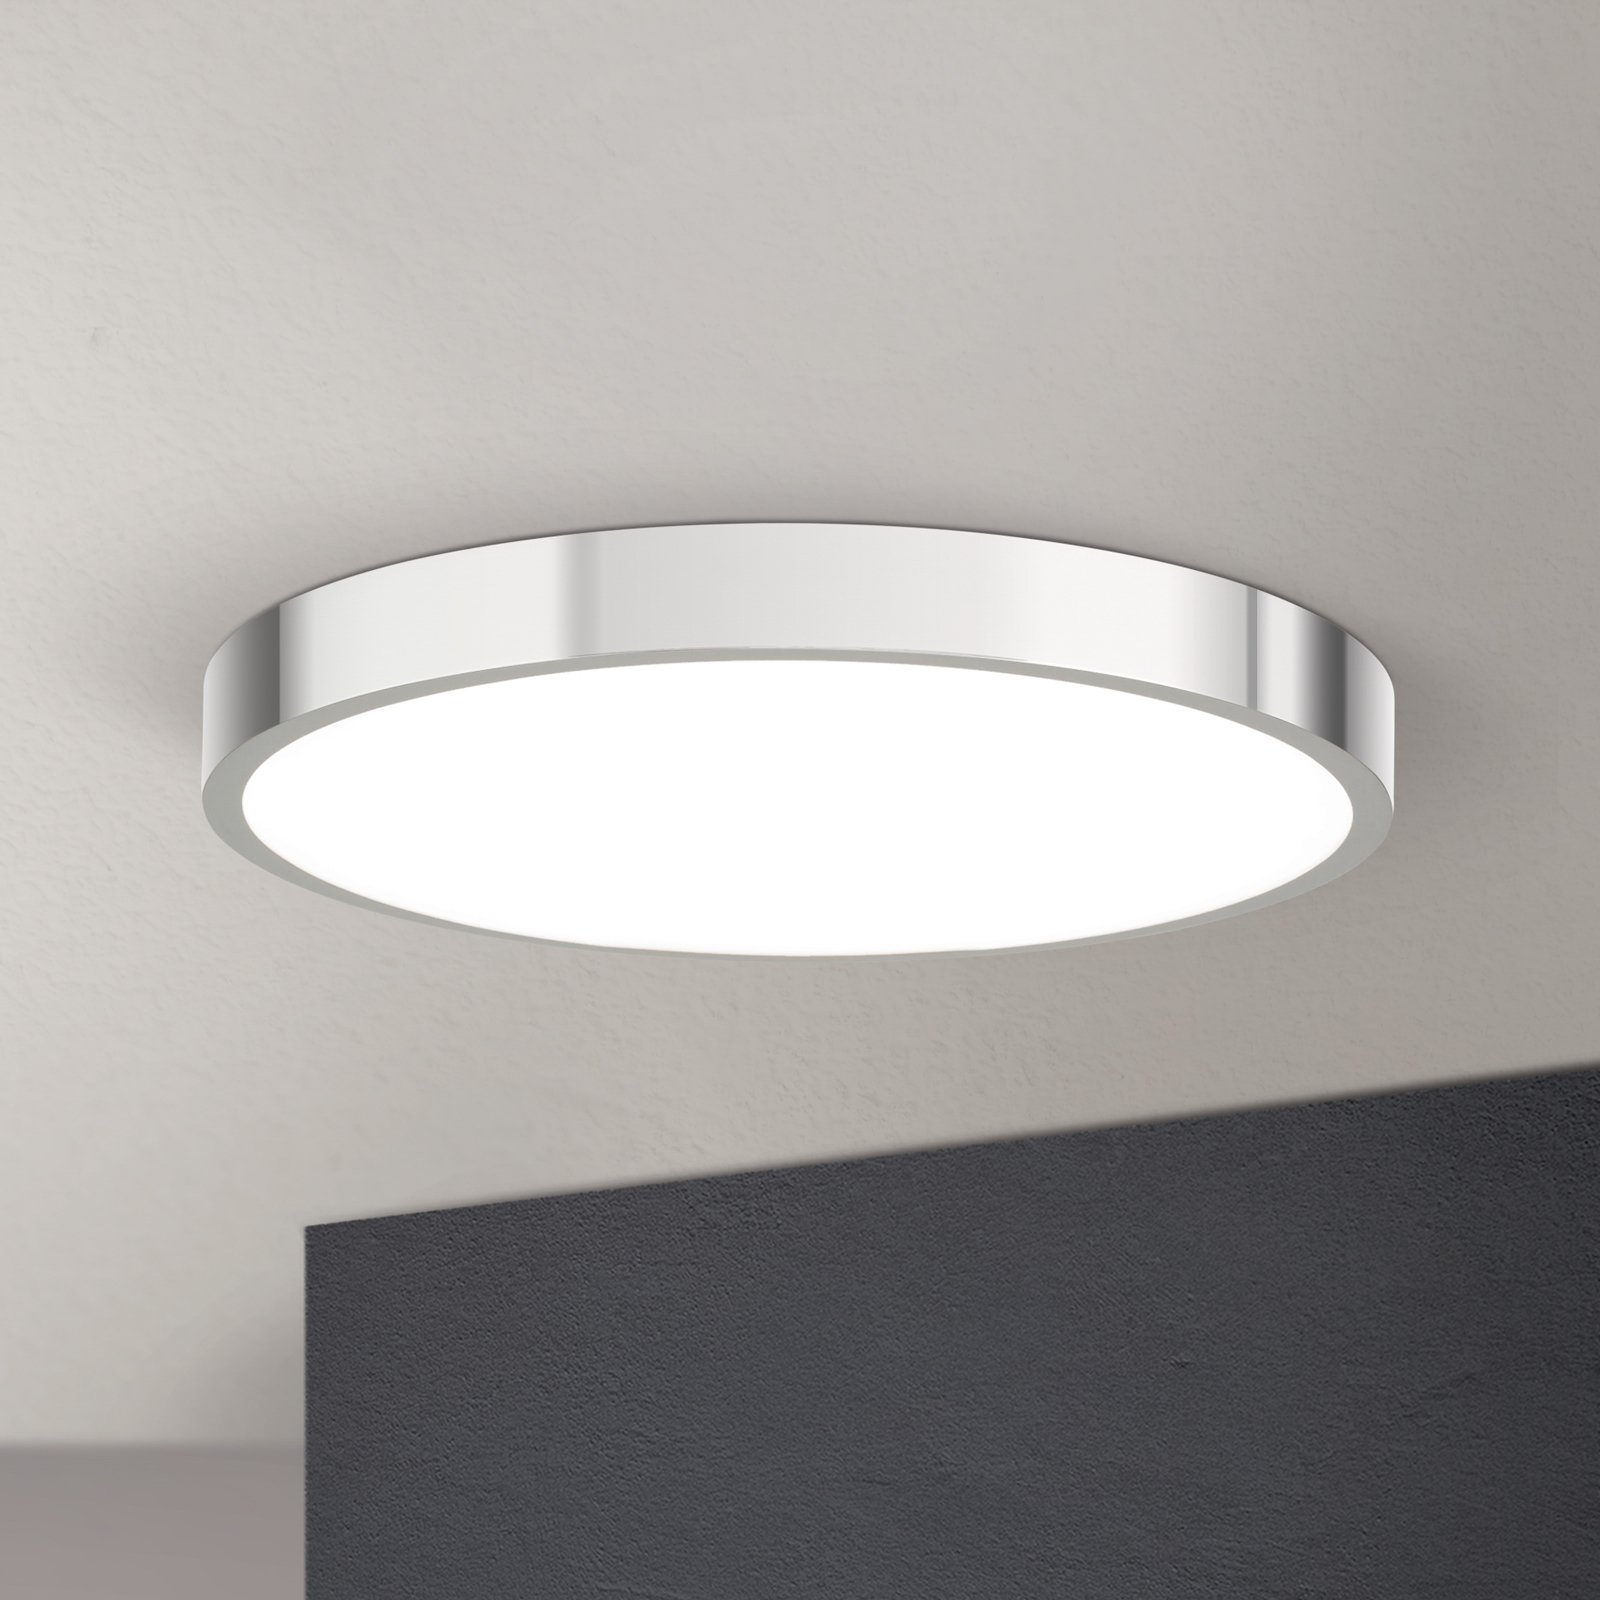 LED ceiling light Bully, chrome, Ø 28 cm